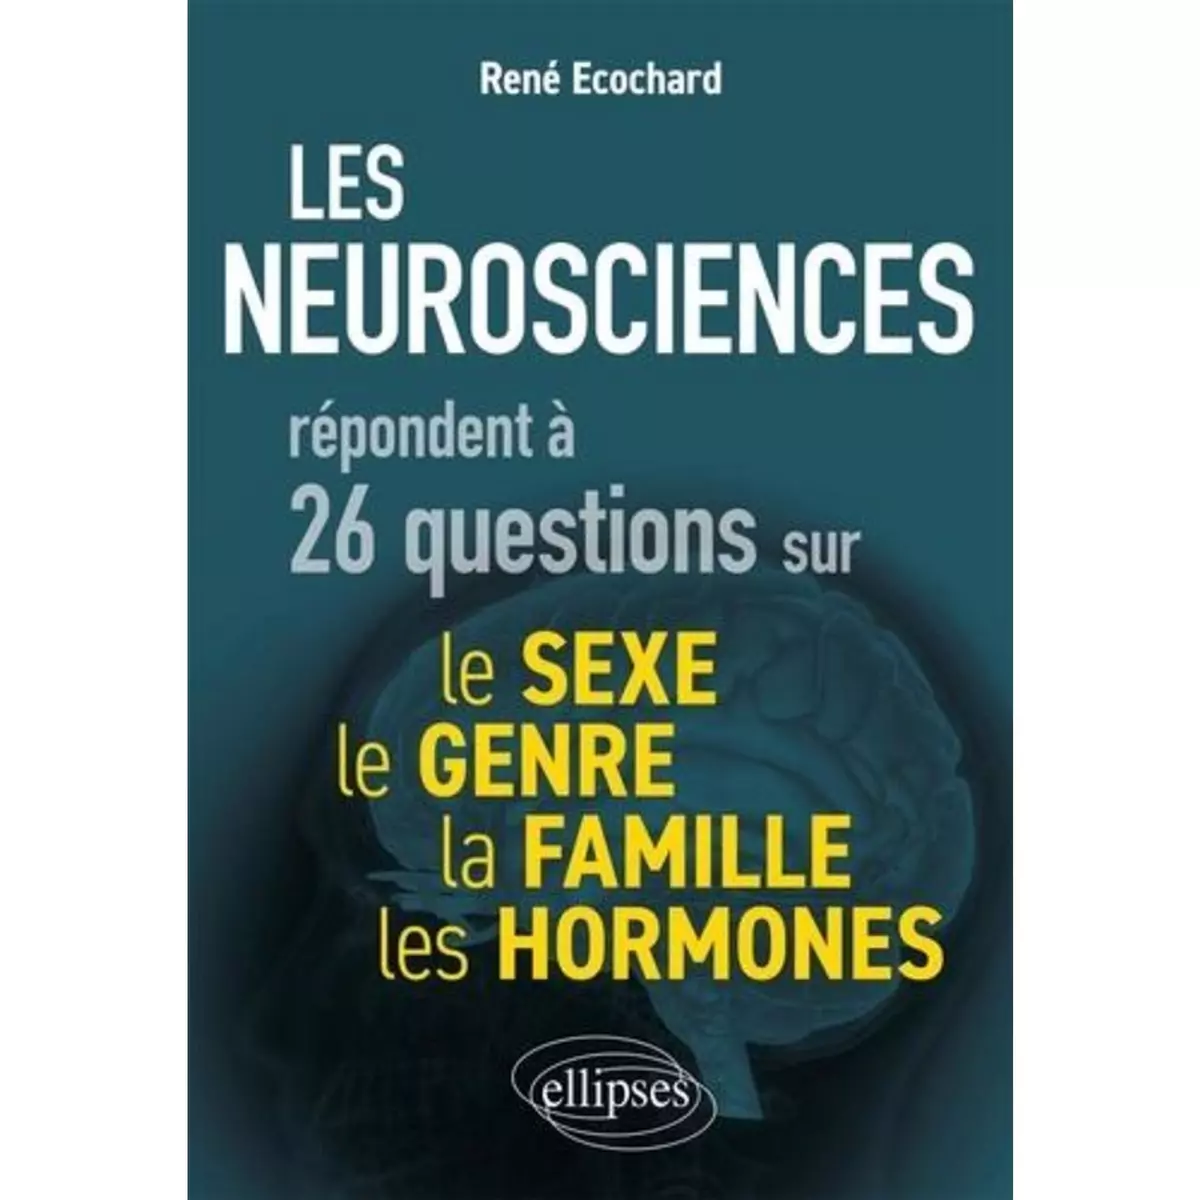  LES NEUROSCIENCES REPONDENT A 26 QUESTIONS SUR LE SEXE, LE GENRE, LA FAMILLE, LES HORMONES, Ecochard René